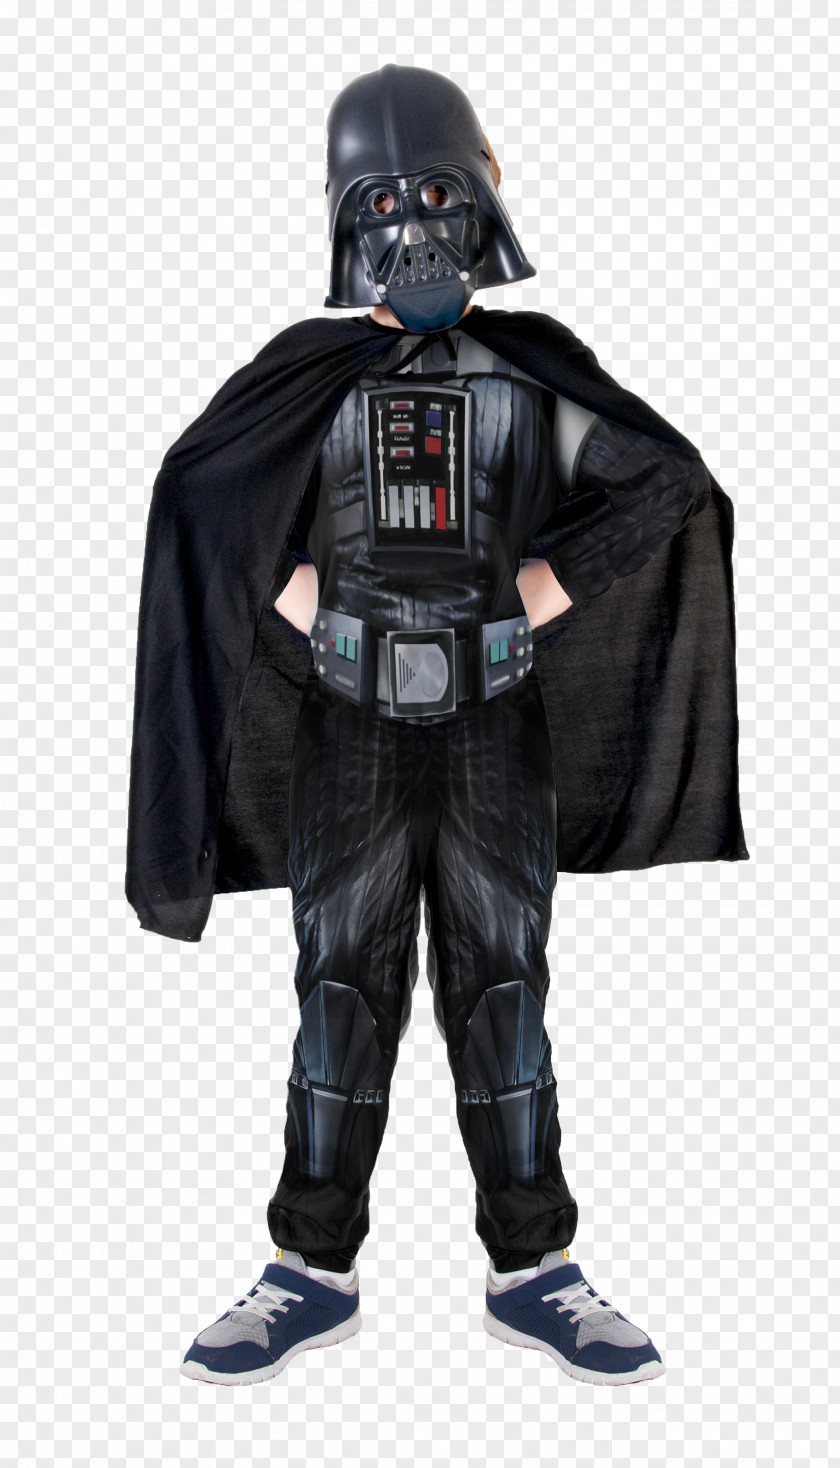 Star Wars Anakin Skywalker Child Darth Vader Teen Costume PNG